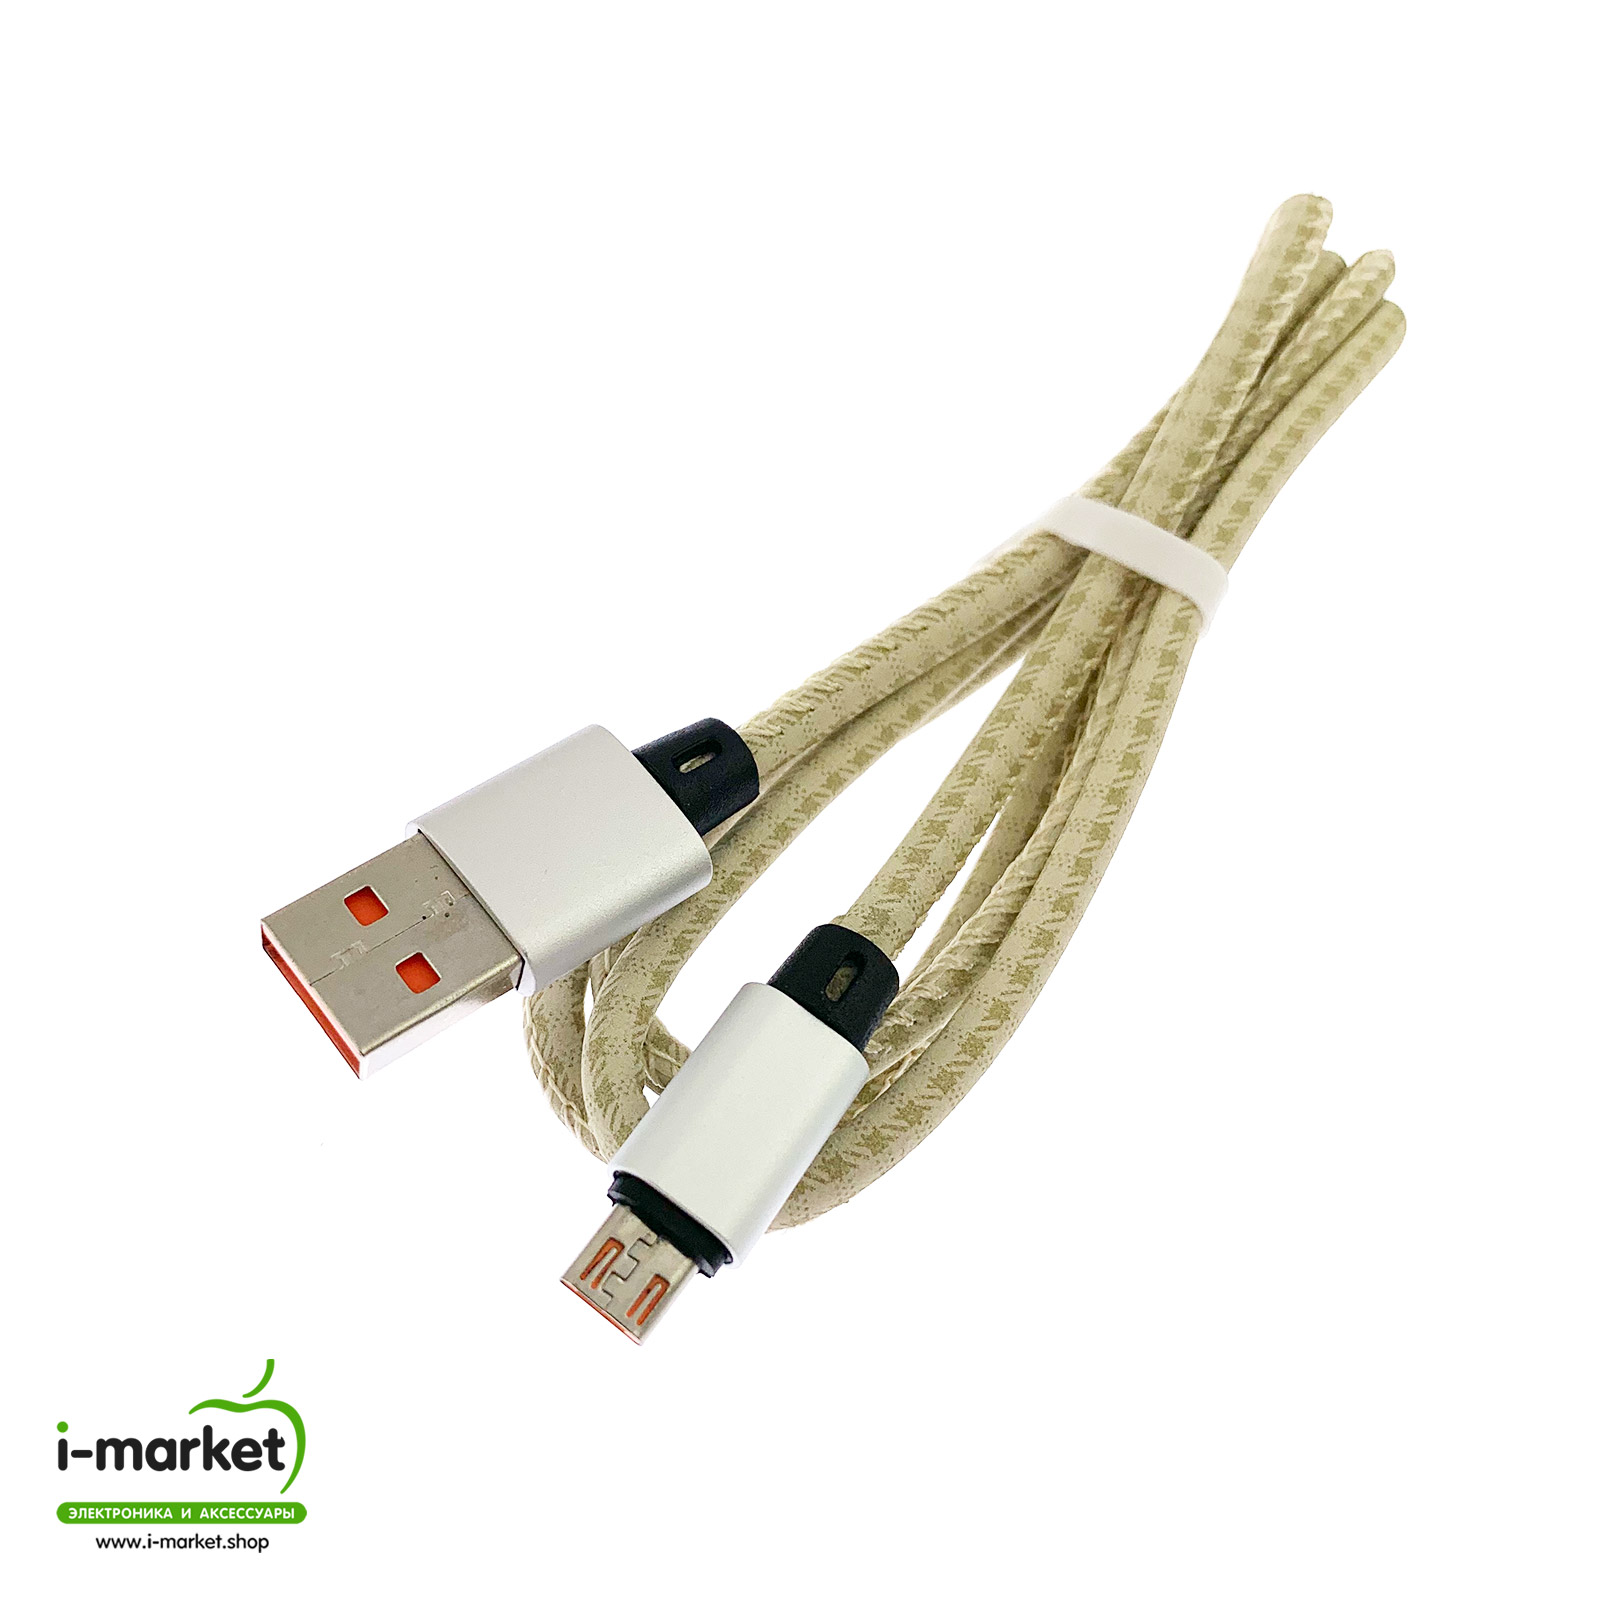 USB Дата кабель A88 для заряда и синхронизации, тип Micro-USB, в армированной под кожу оболочке, длина 1 метр, цвет золотистый.